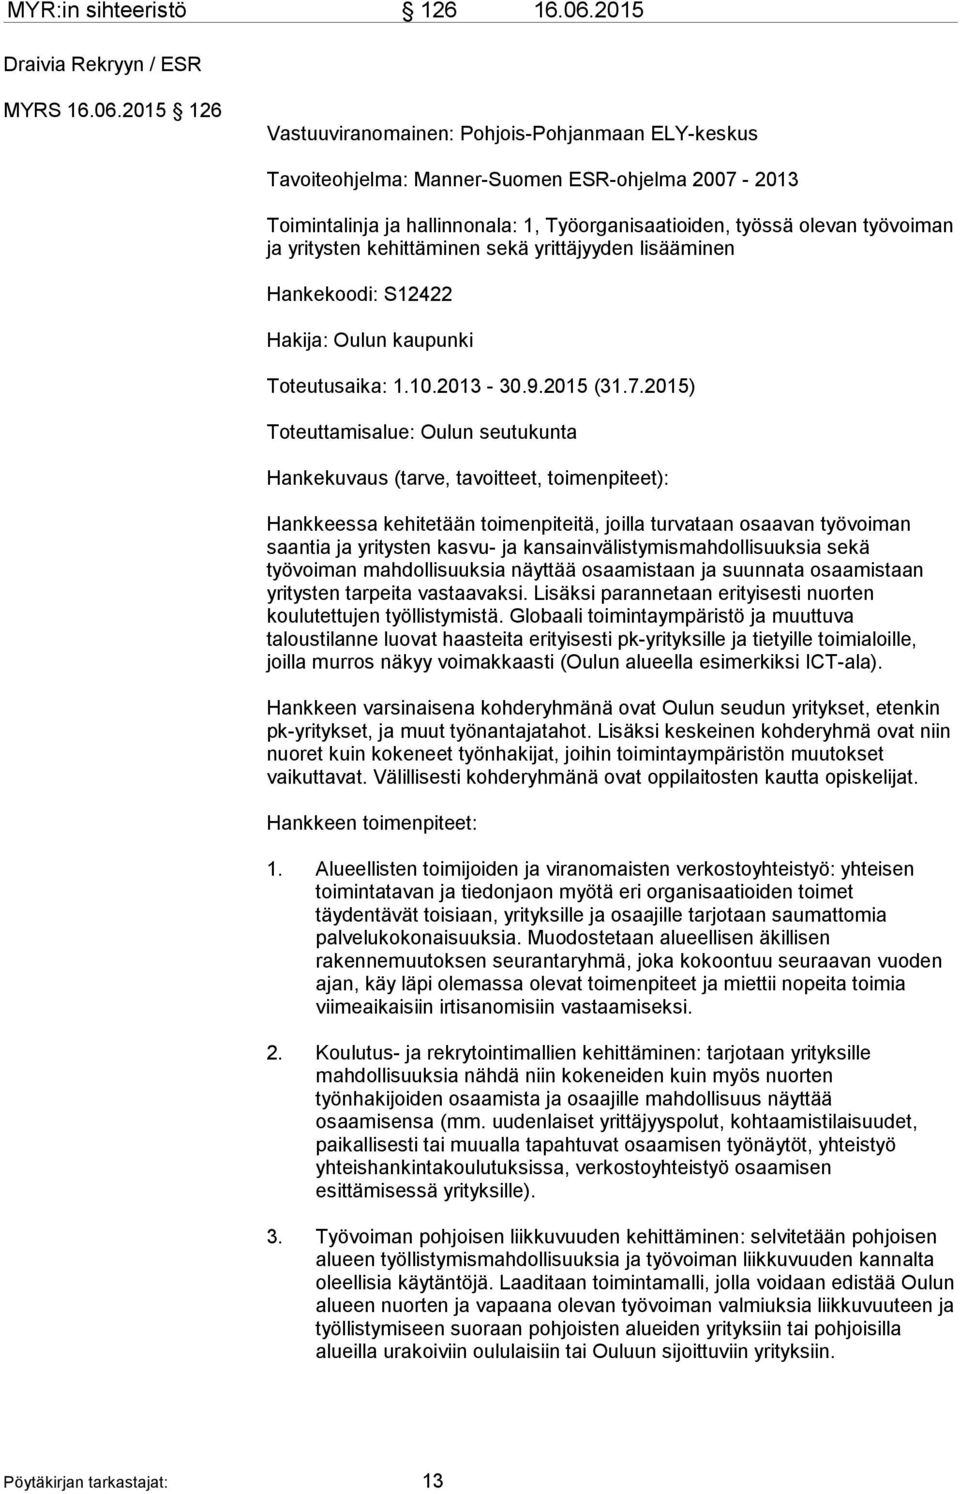 2015 126 Vastuuviranomainen: Pohjois-Pohjanmaan ELY-keskus Tavoiteohjelma: Manner-Suomen ESR-ohjelma 2007-2013 Toimintalinja ja hallinnonala: 1, Työorganisaatioiden, työssä olevan työvoiman ja